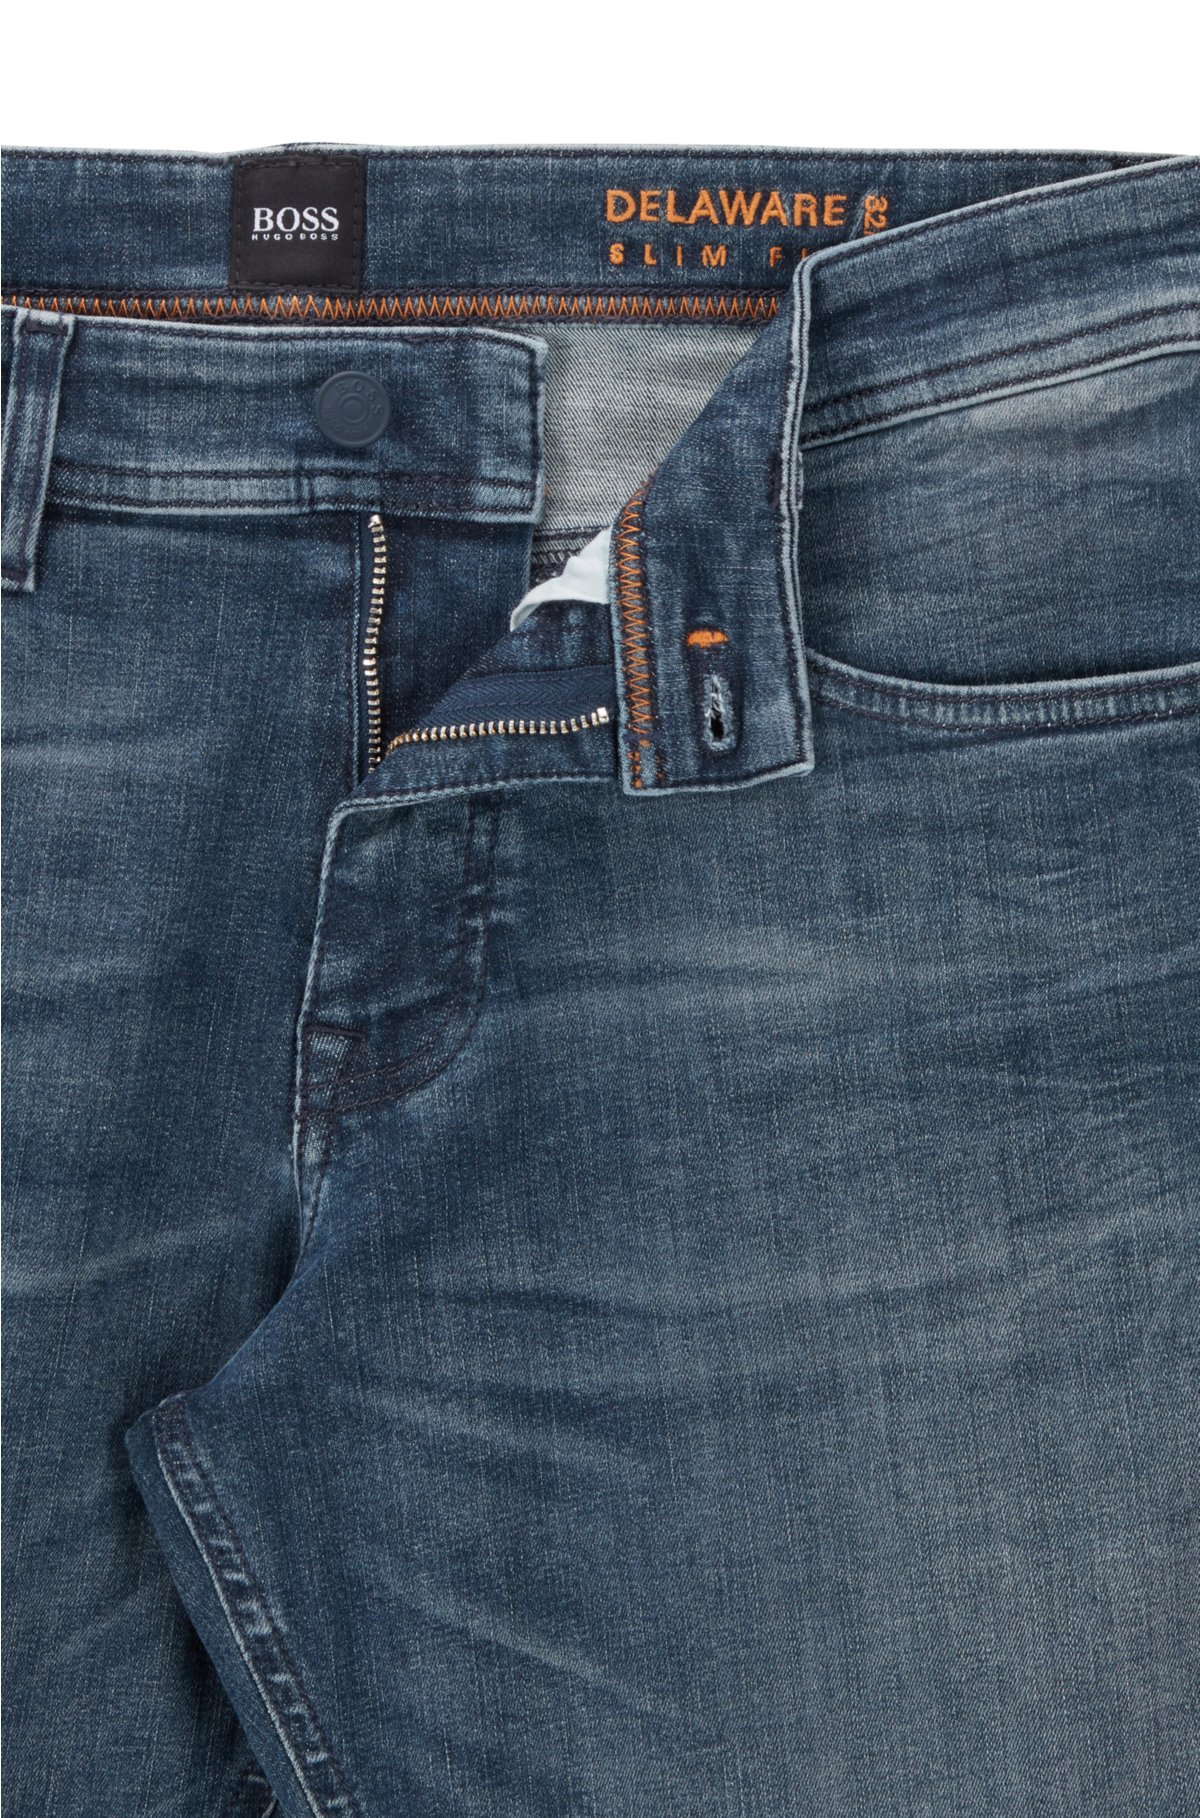 BOSS - jeans in gray-cast super-stretch denim